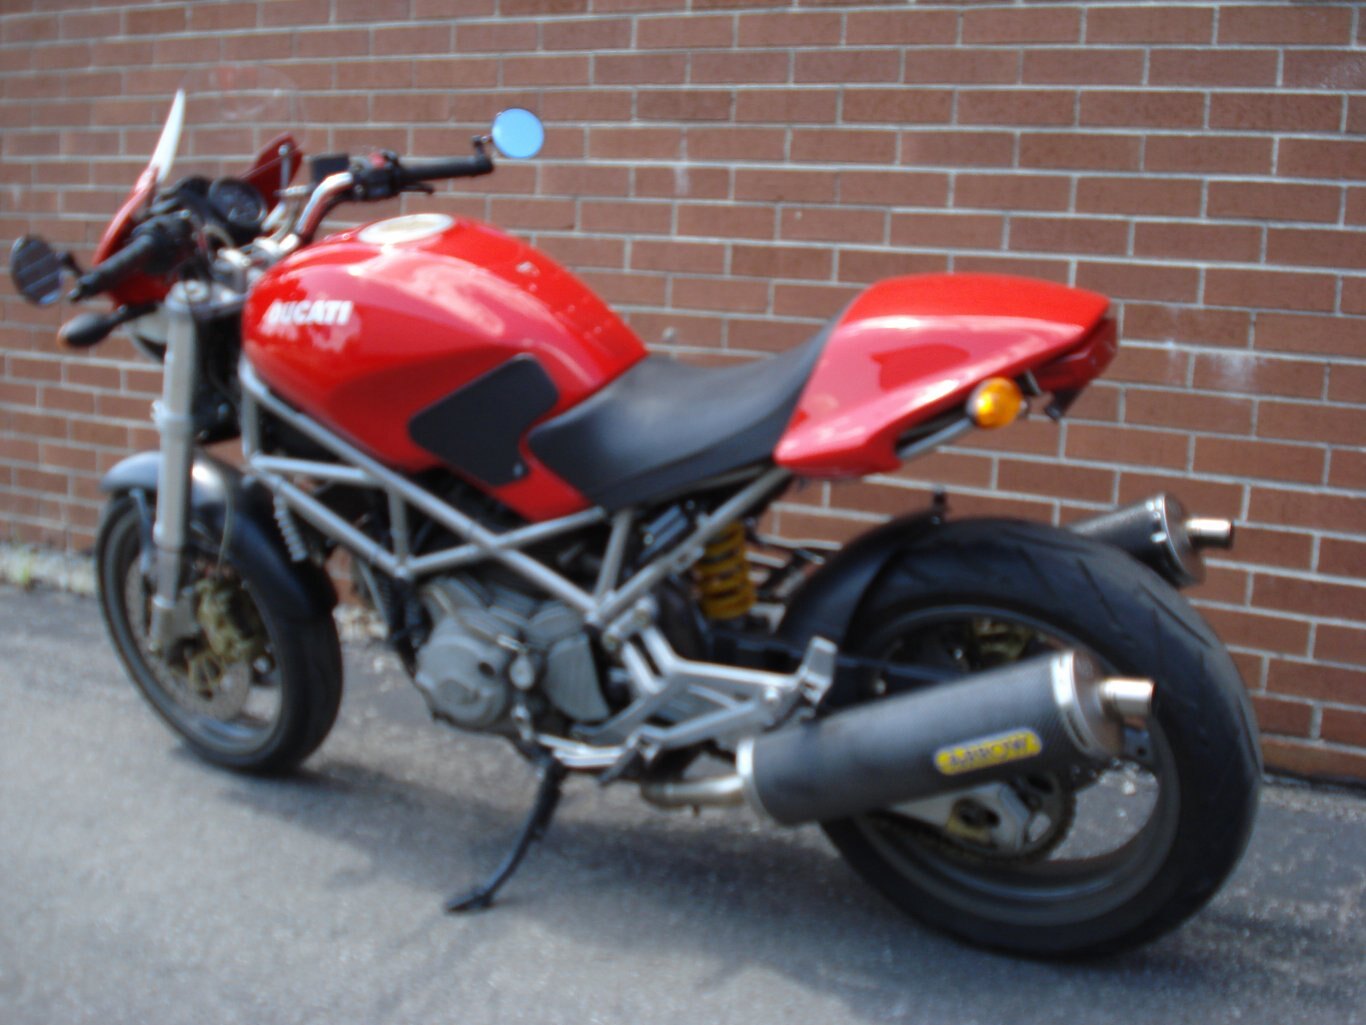 2004 Ducati Monster 800